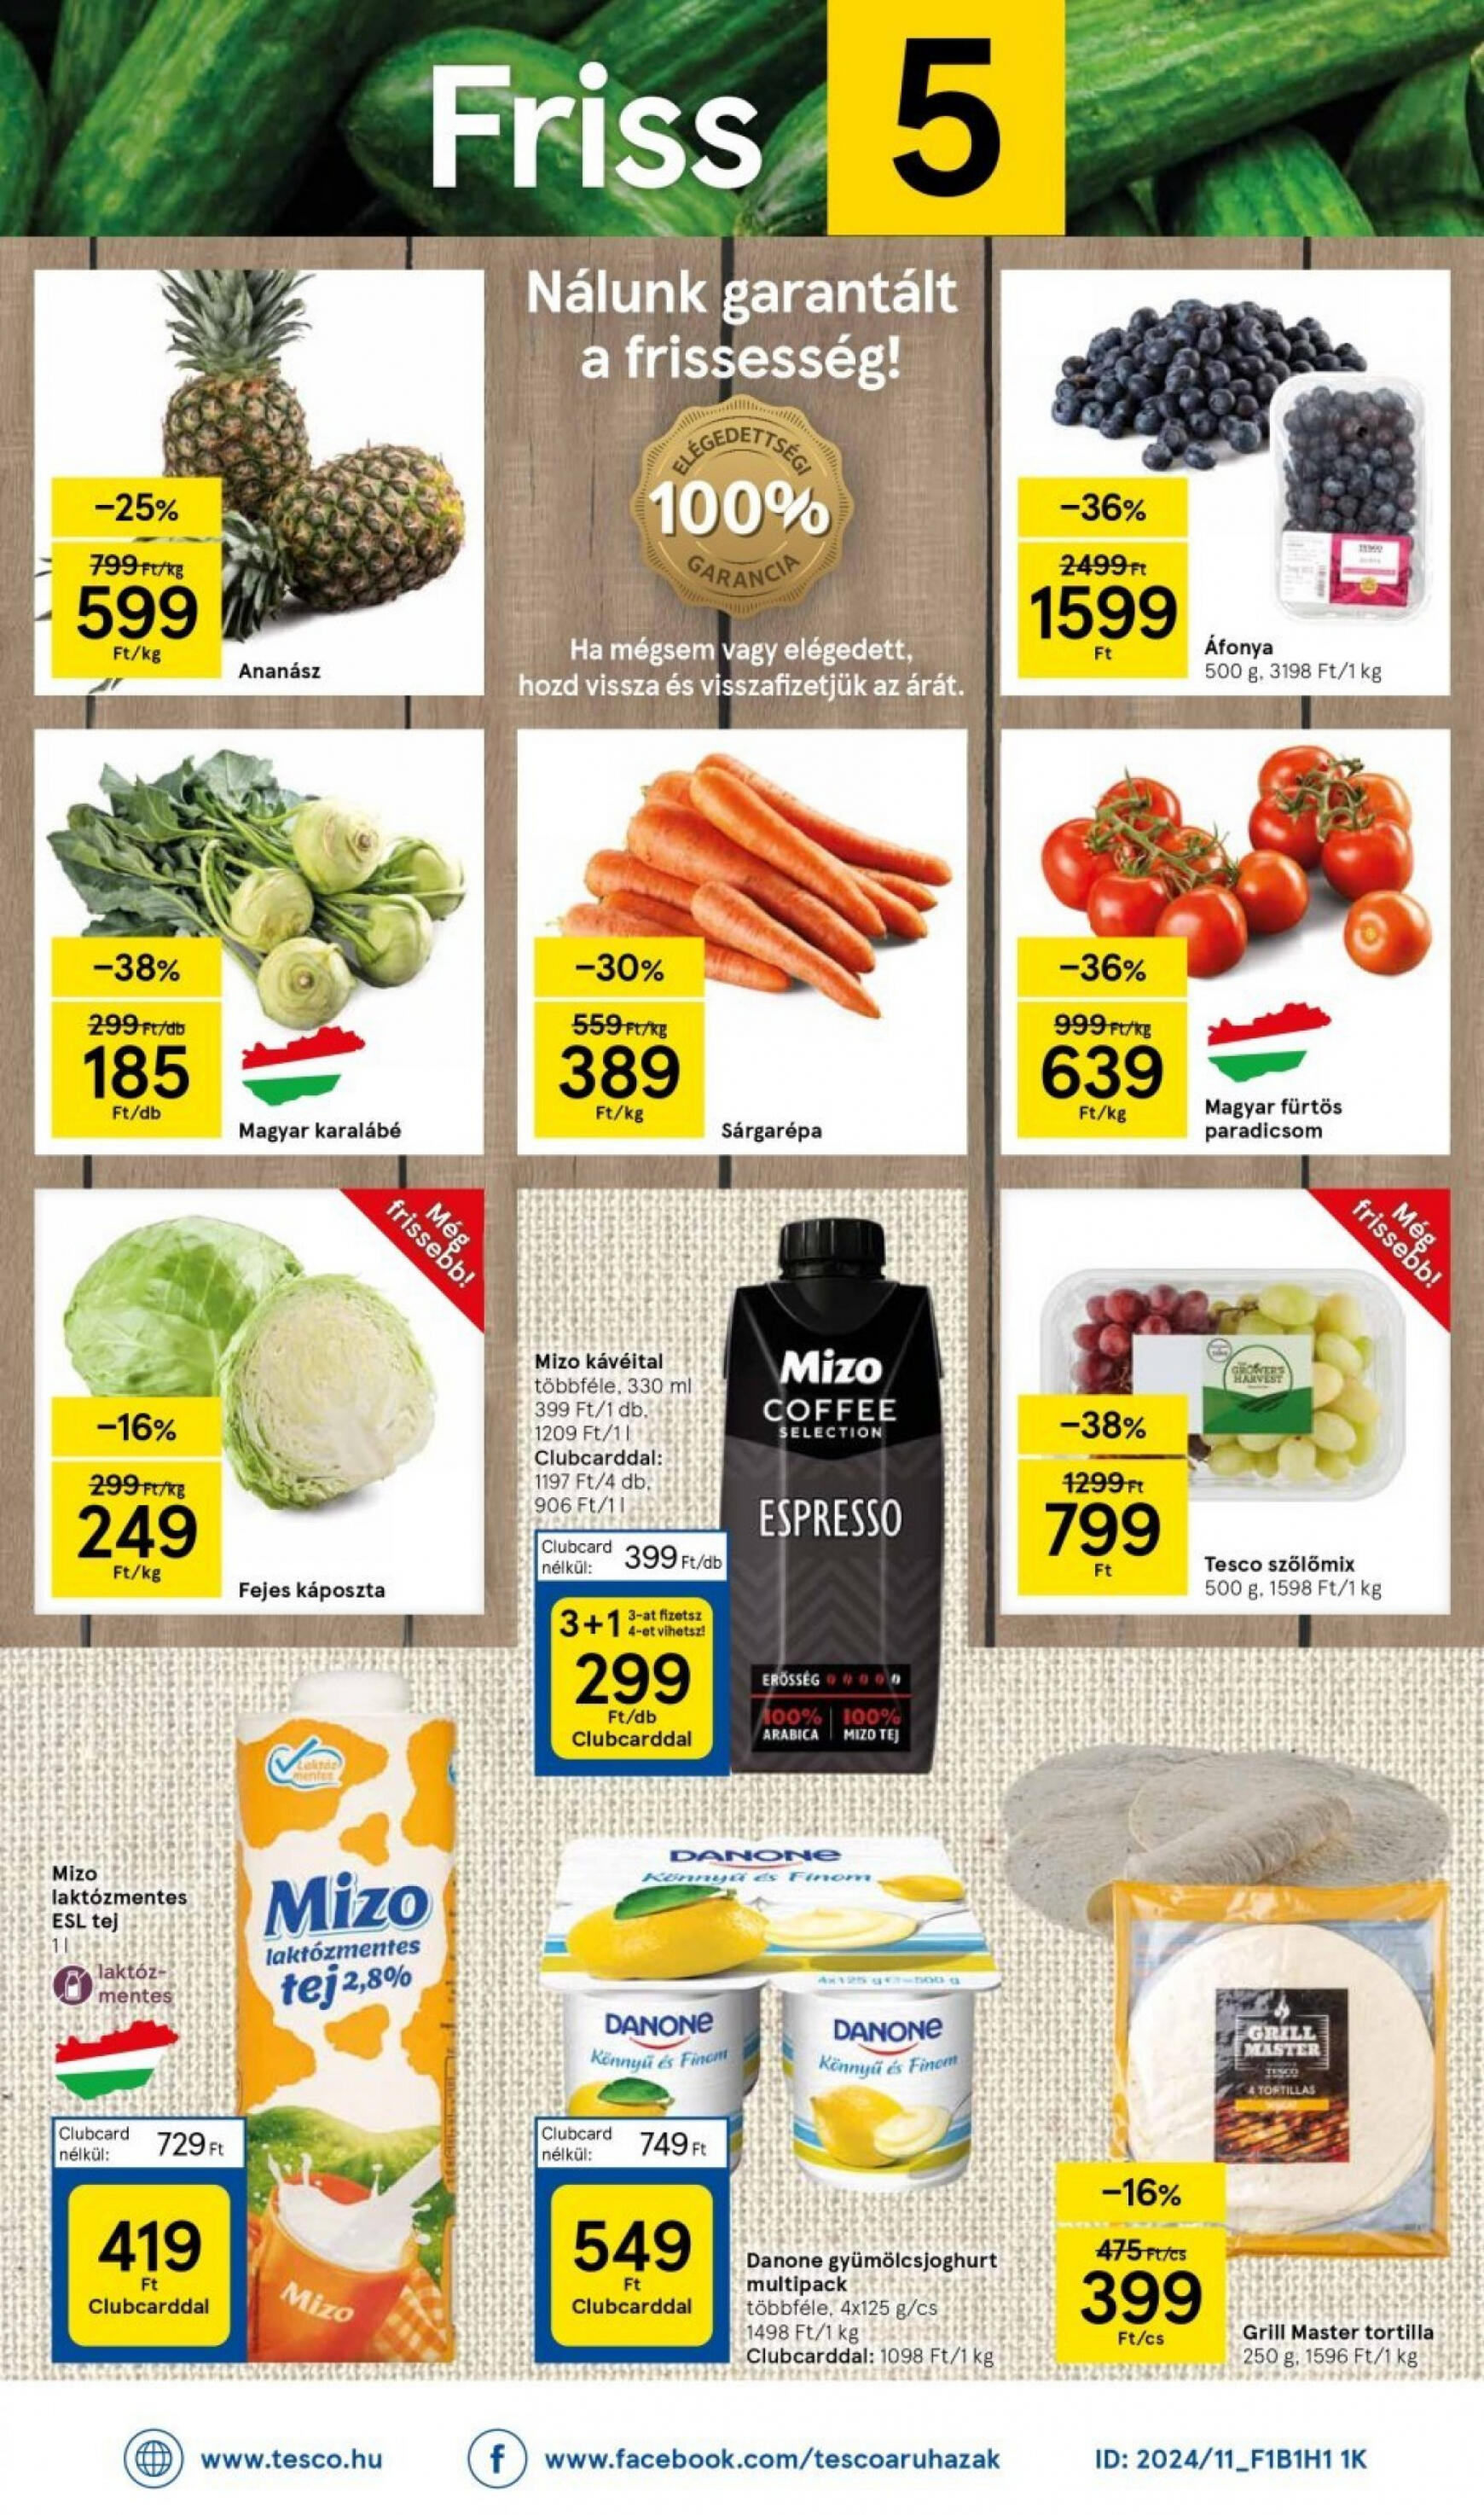 tesco - Aktuális újság Tesco szupermarket 05.09. - 05.15. - page: 8